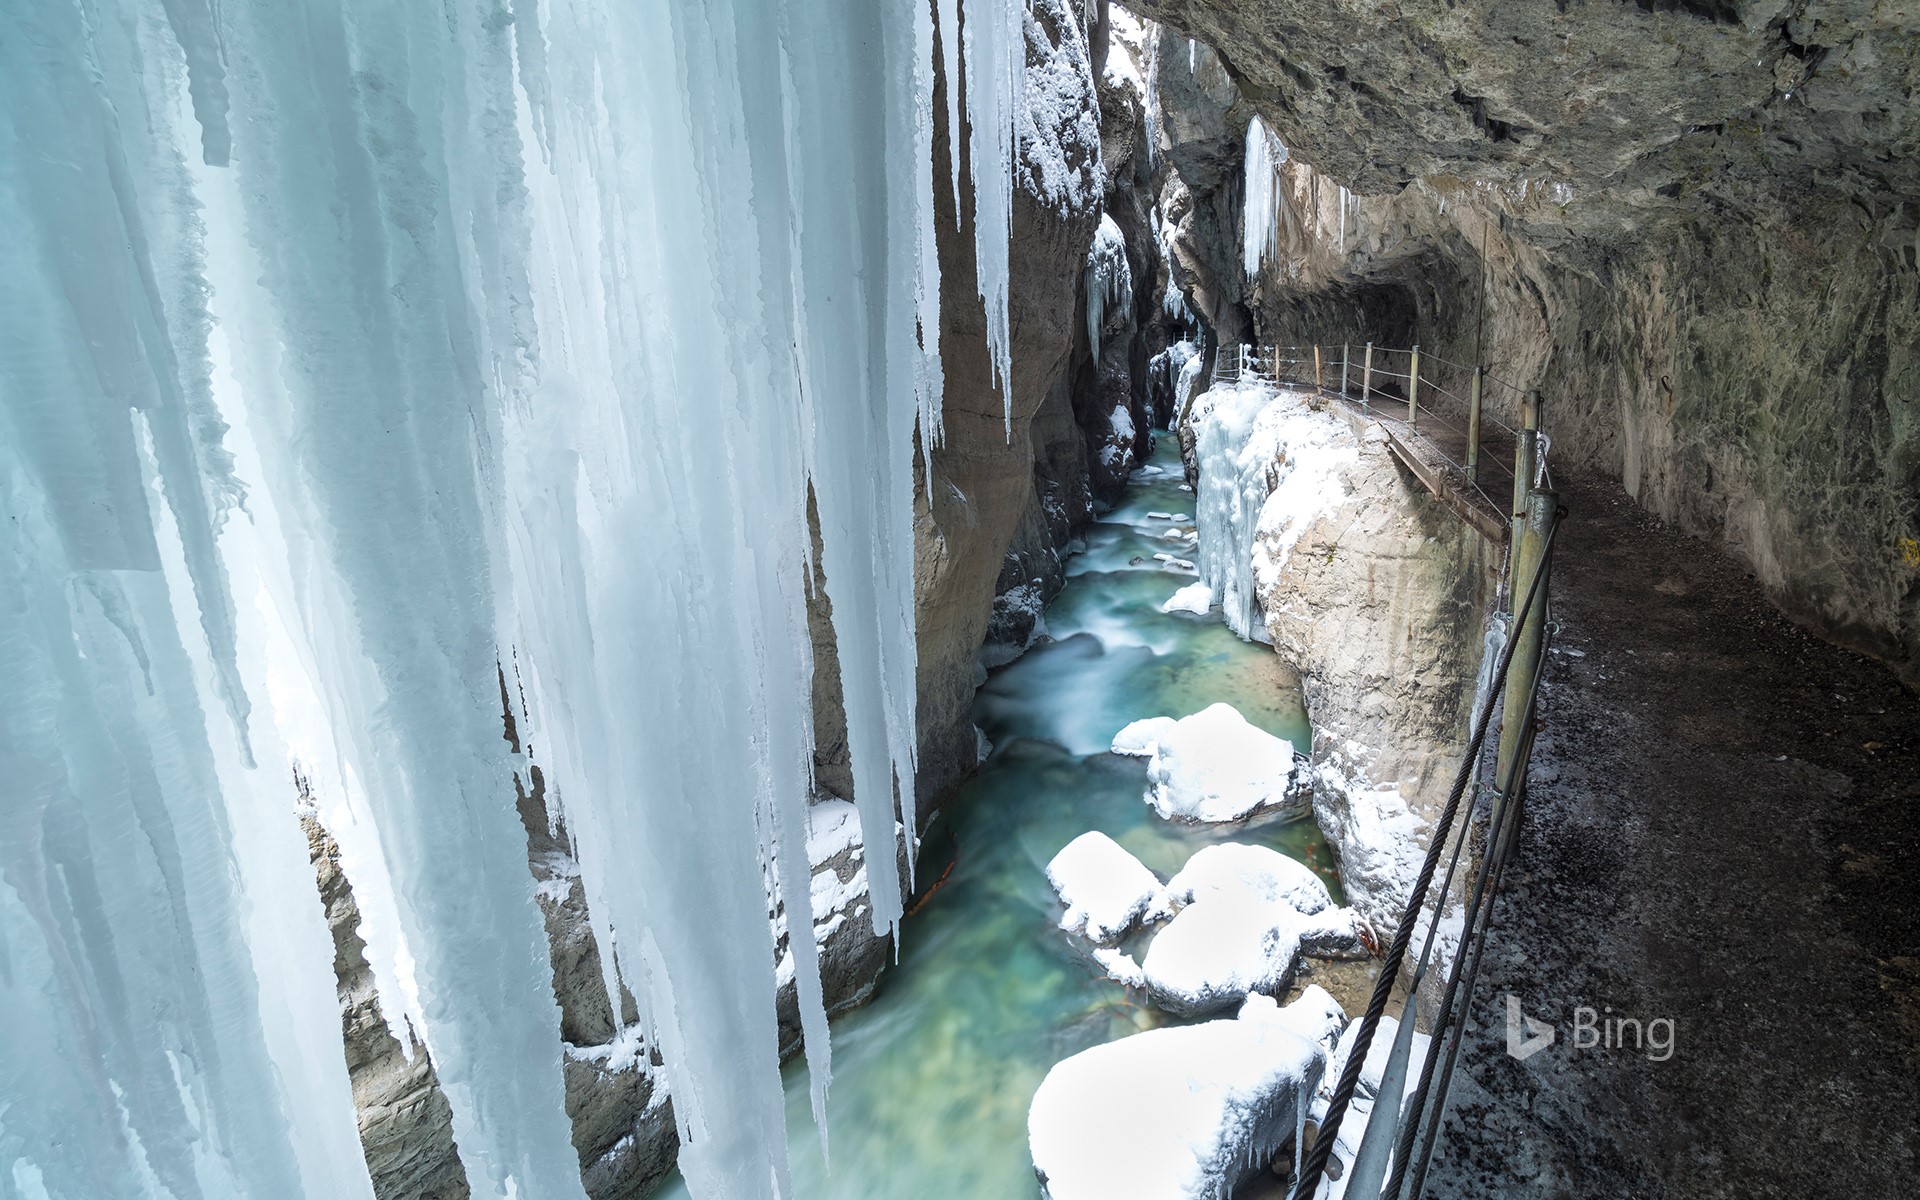 View of icicles in Partnachklamm Gorge, Garmisch-Partenkirchen, Bavaria, Germany